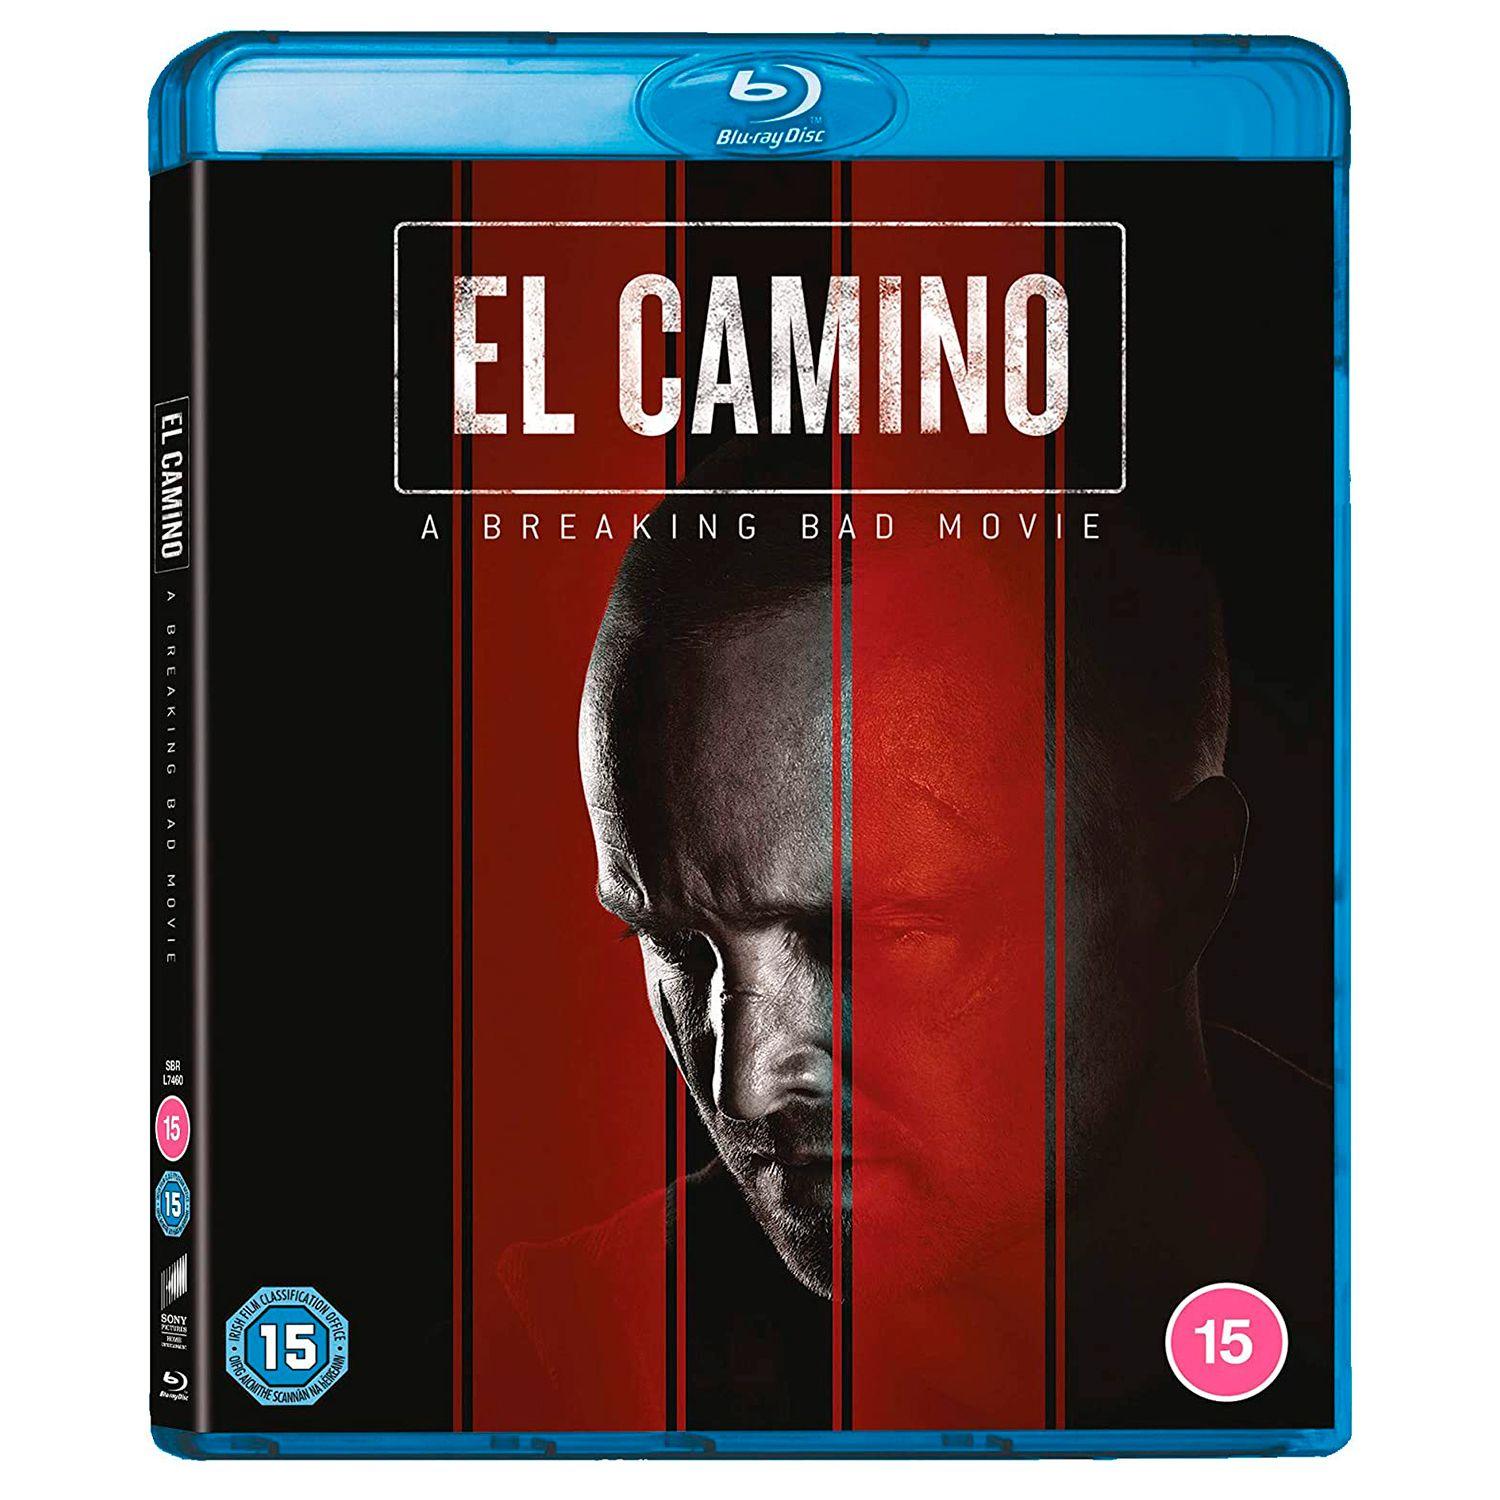 El Camino: Во все тяжкие (русские субтитры) (Blu-ray)